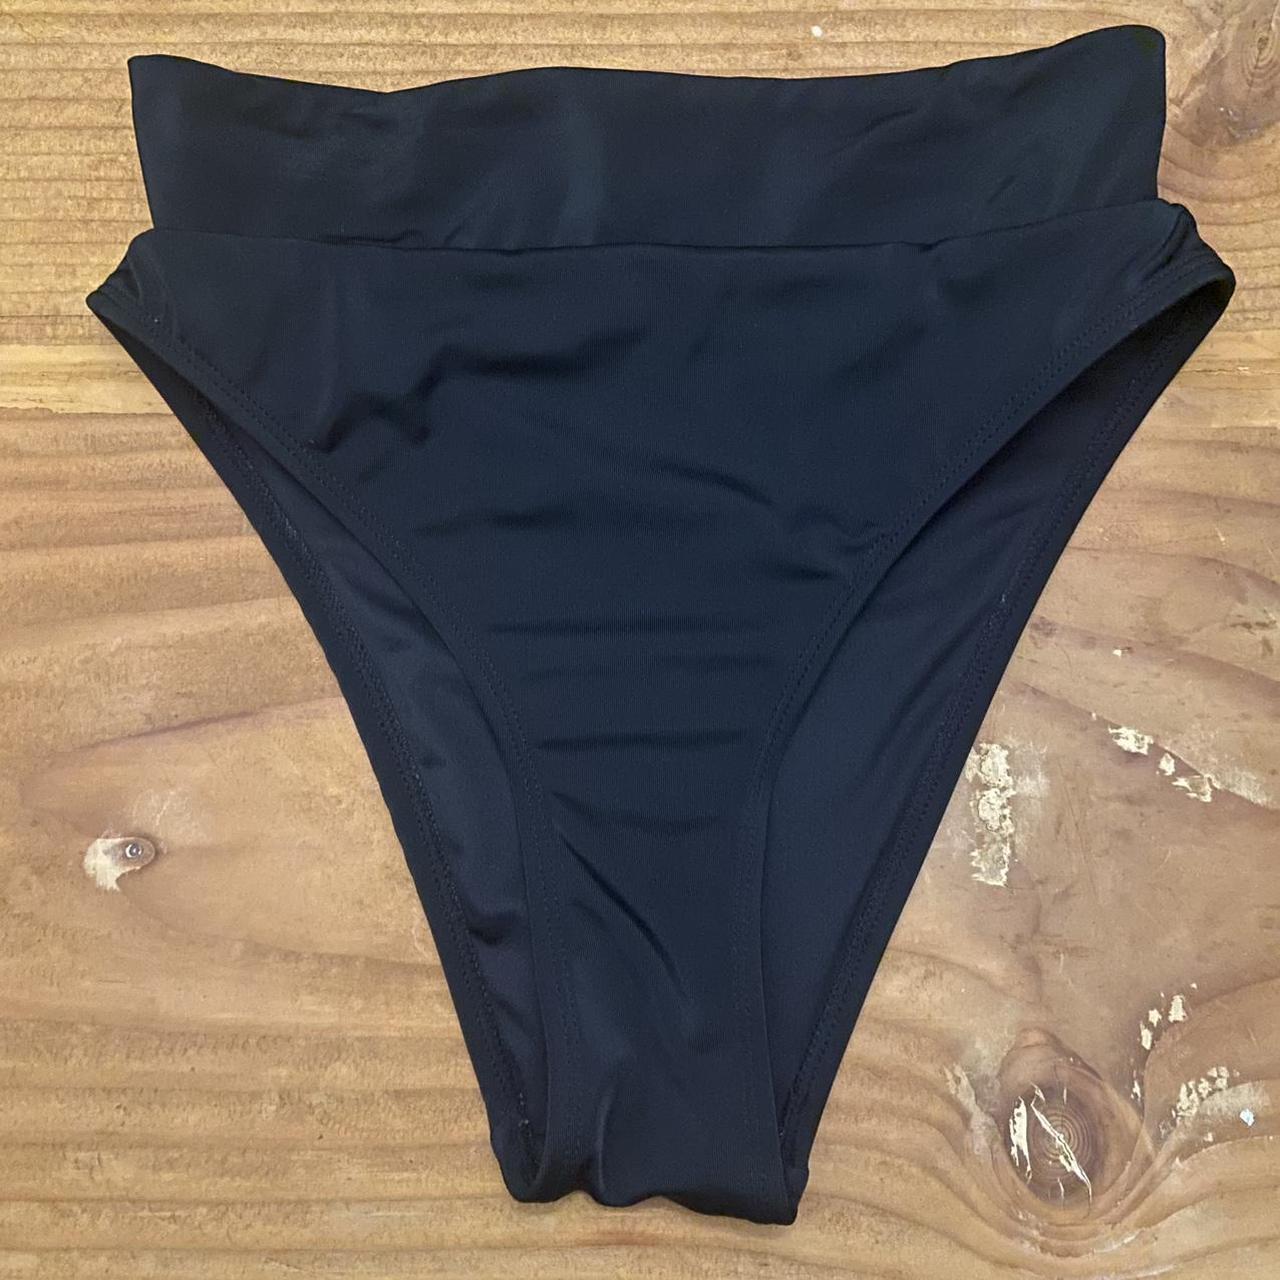 Aéropostale Spandex Panties for Women